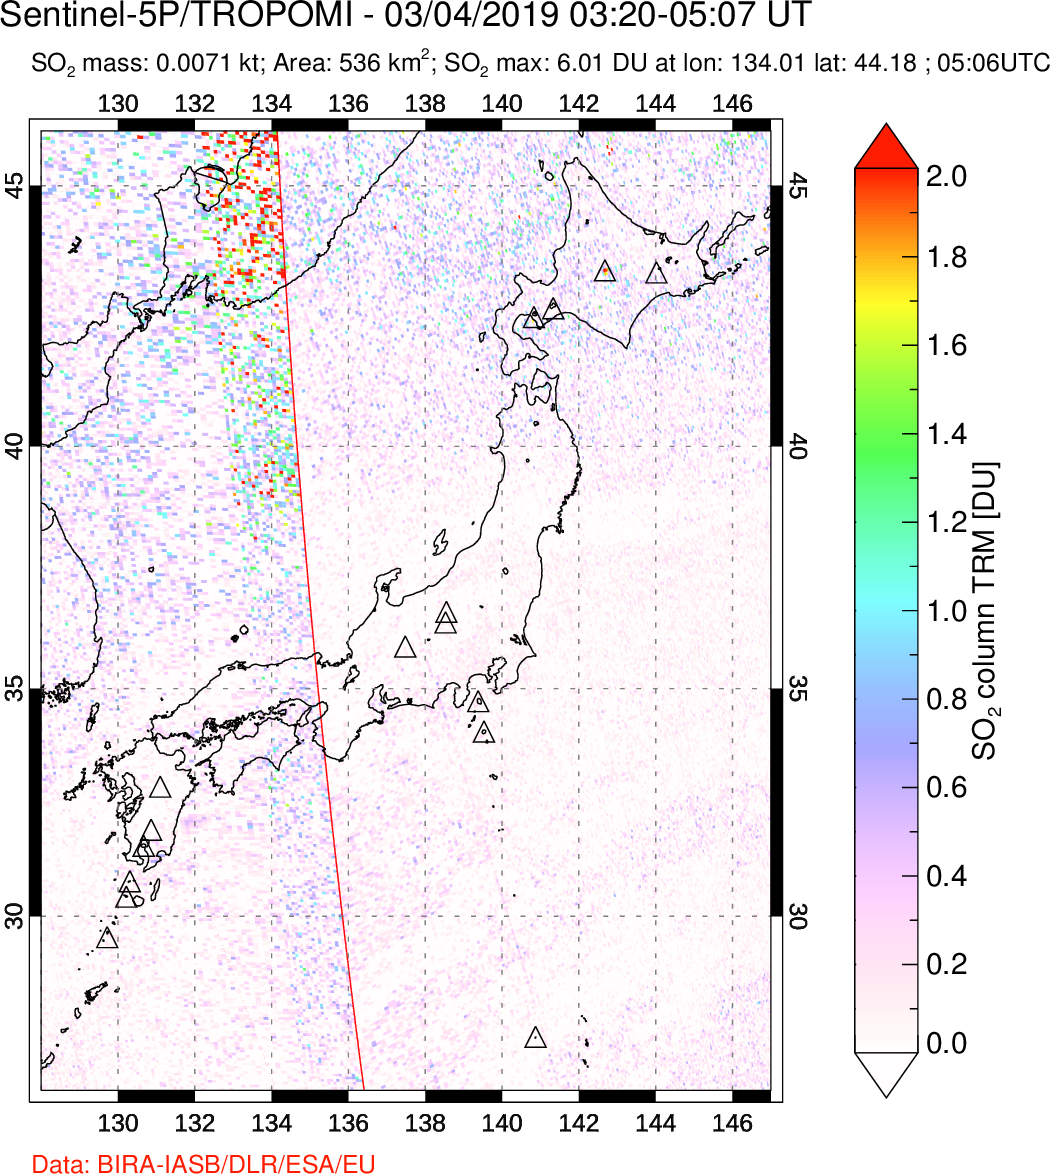 A sulfur dioxide image over Japan on Mar 04, 2019.